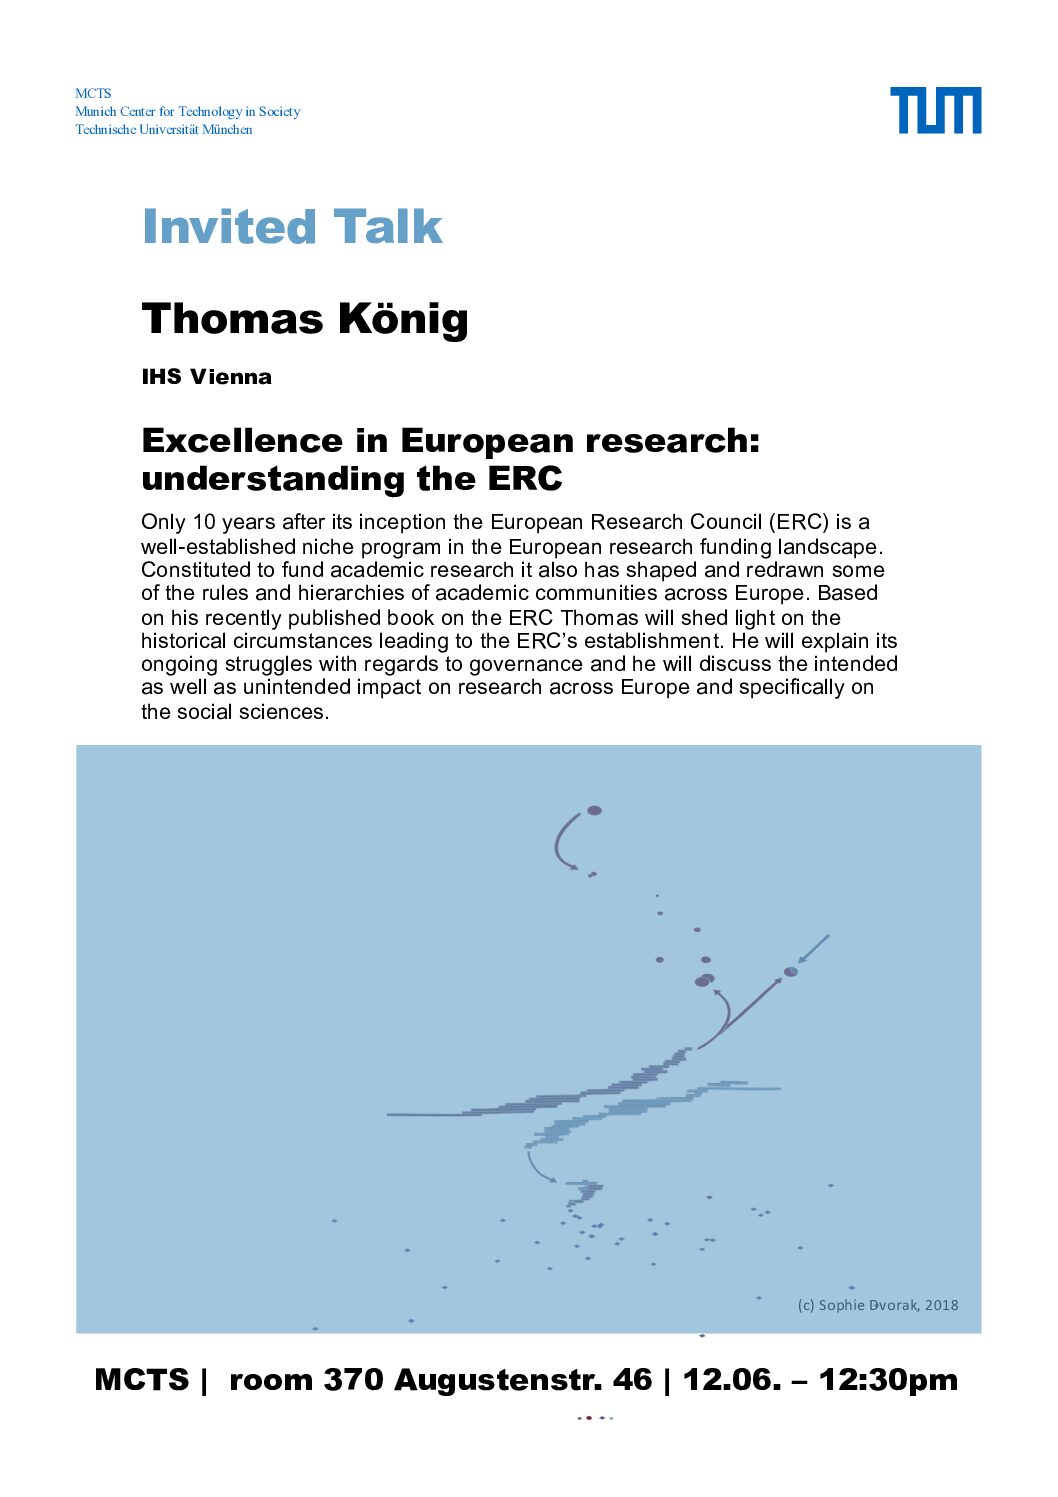 Organisation des Vortrags: T. König: "Excellence in European Research: Understanding the ERC" am 12.06.2018